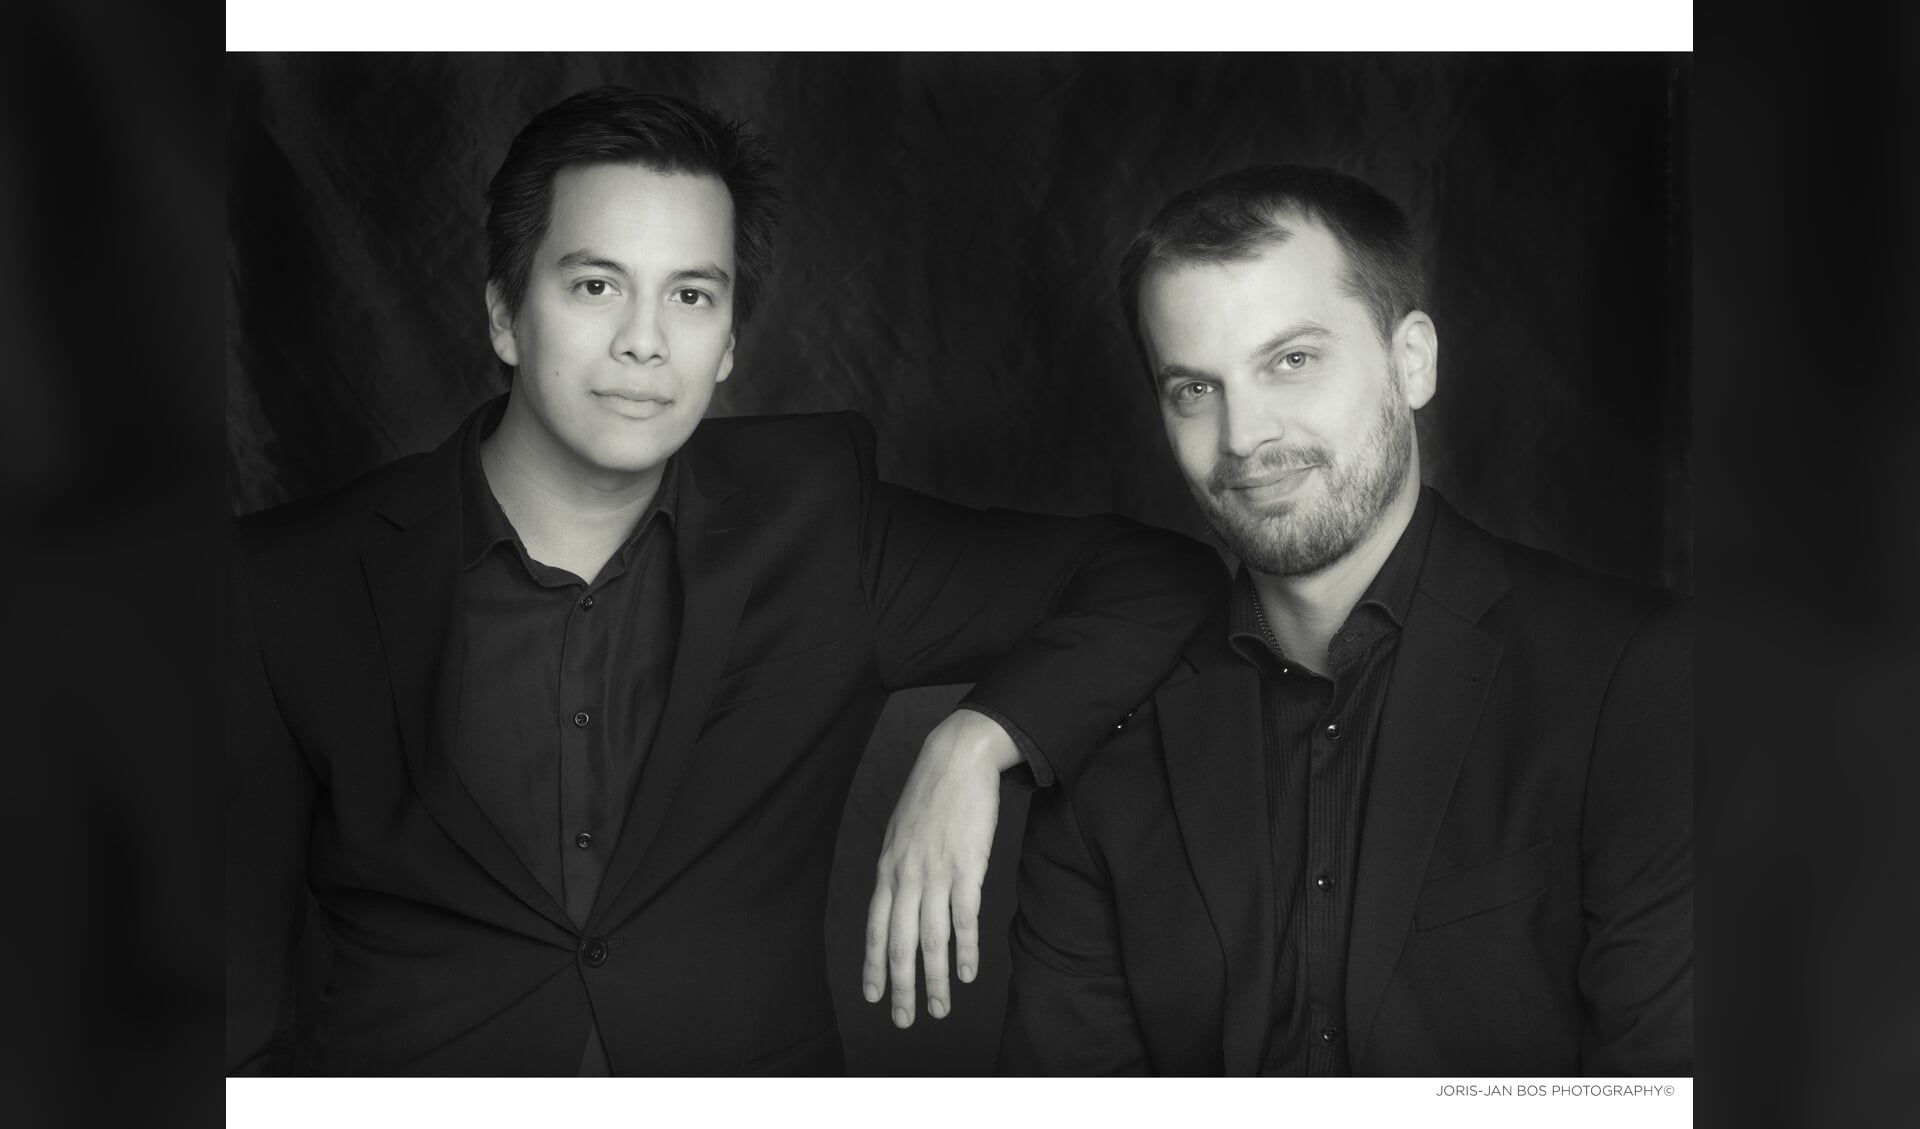 Violist Eduardo Paredes en pianist Daan Treur geven op 10 februari een concert in WZC Adegeest. Foto: Joris-Jan Bos via De Toonzetter